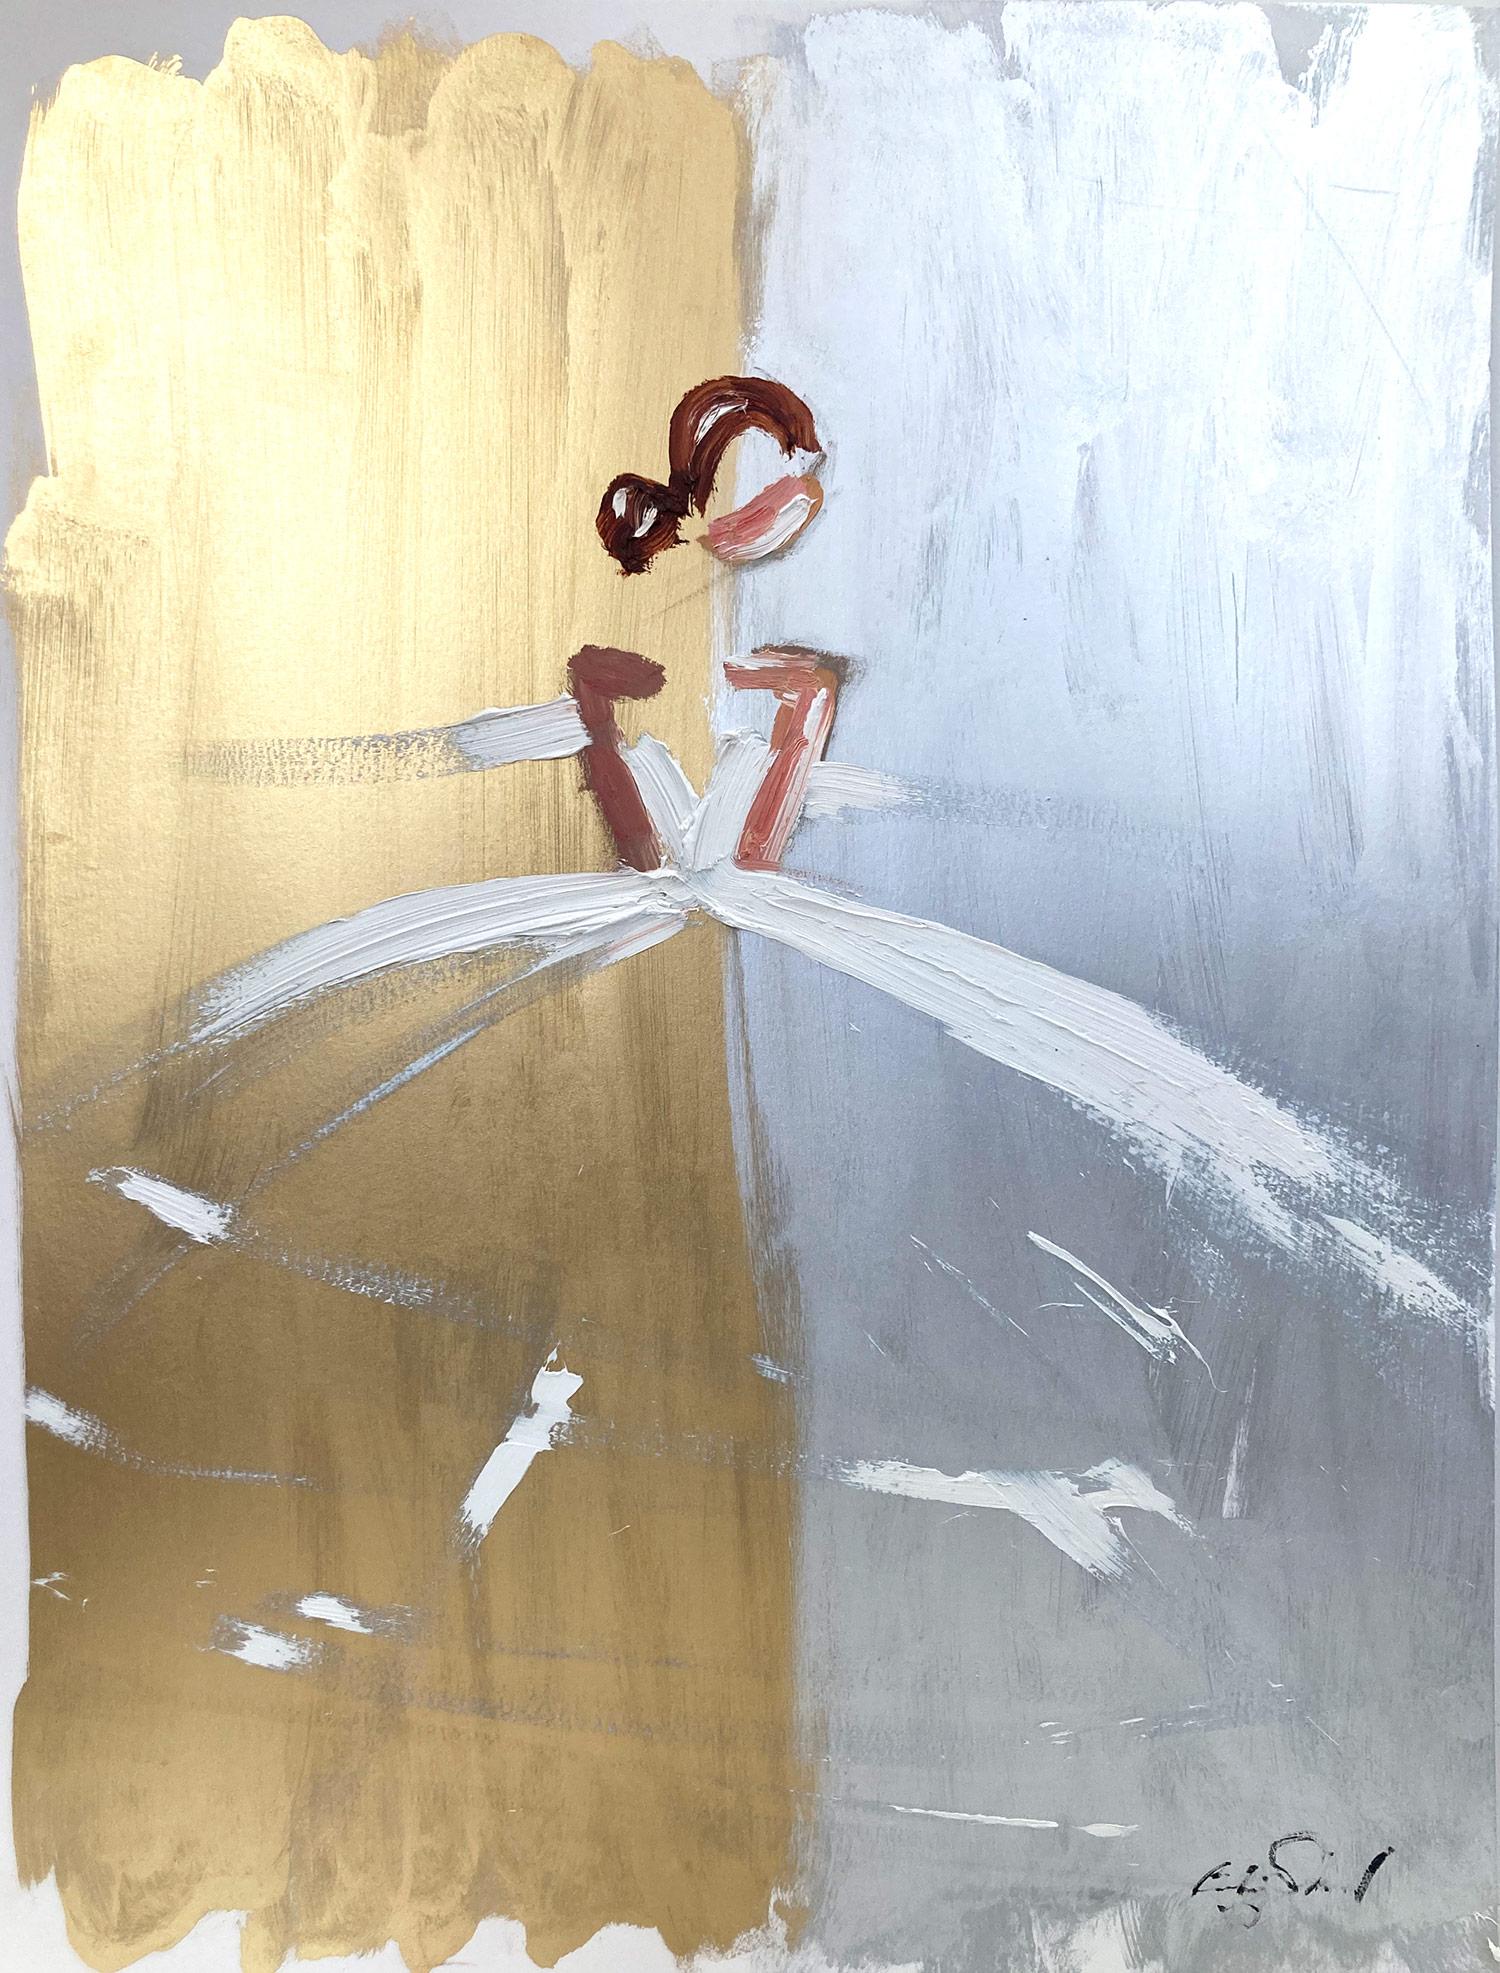 Abstract Painting Cindy Shaoul - Parisian Golden Hour - Robe abstraite - Peinture à l'huile - Figure haute couture